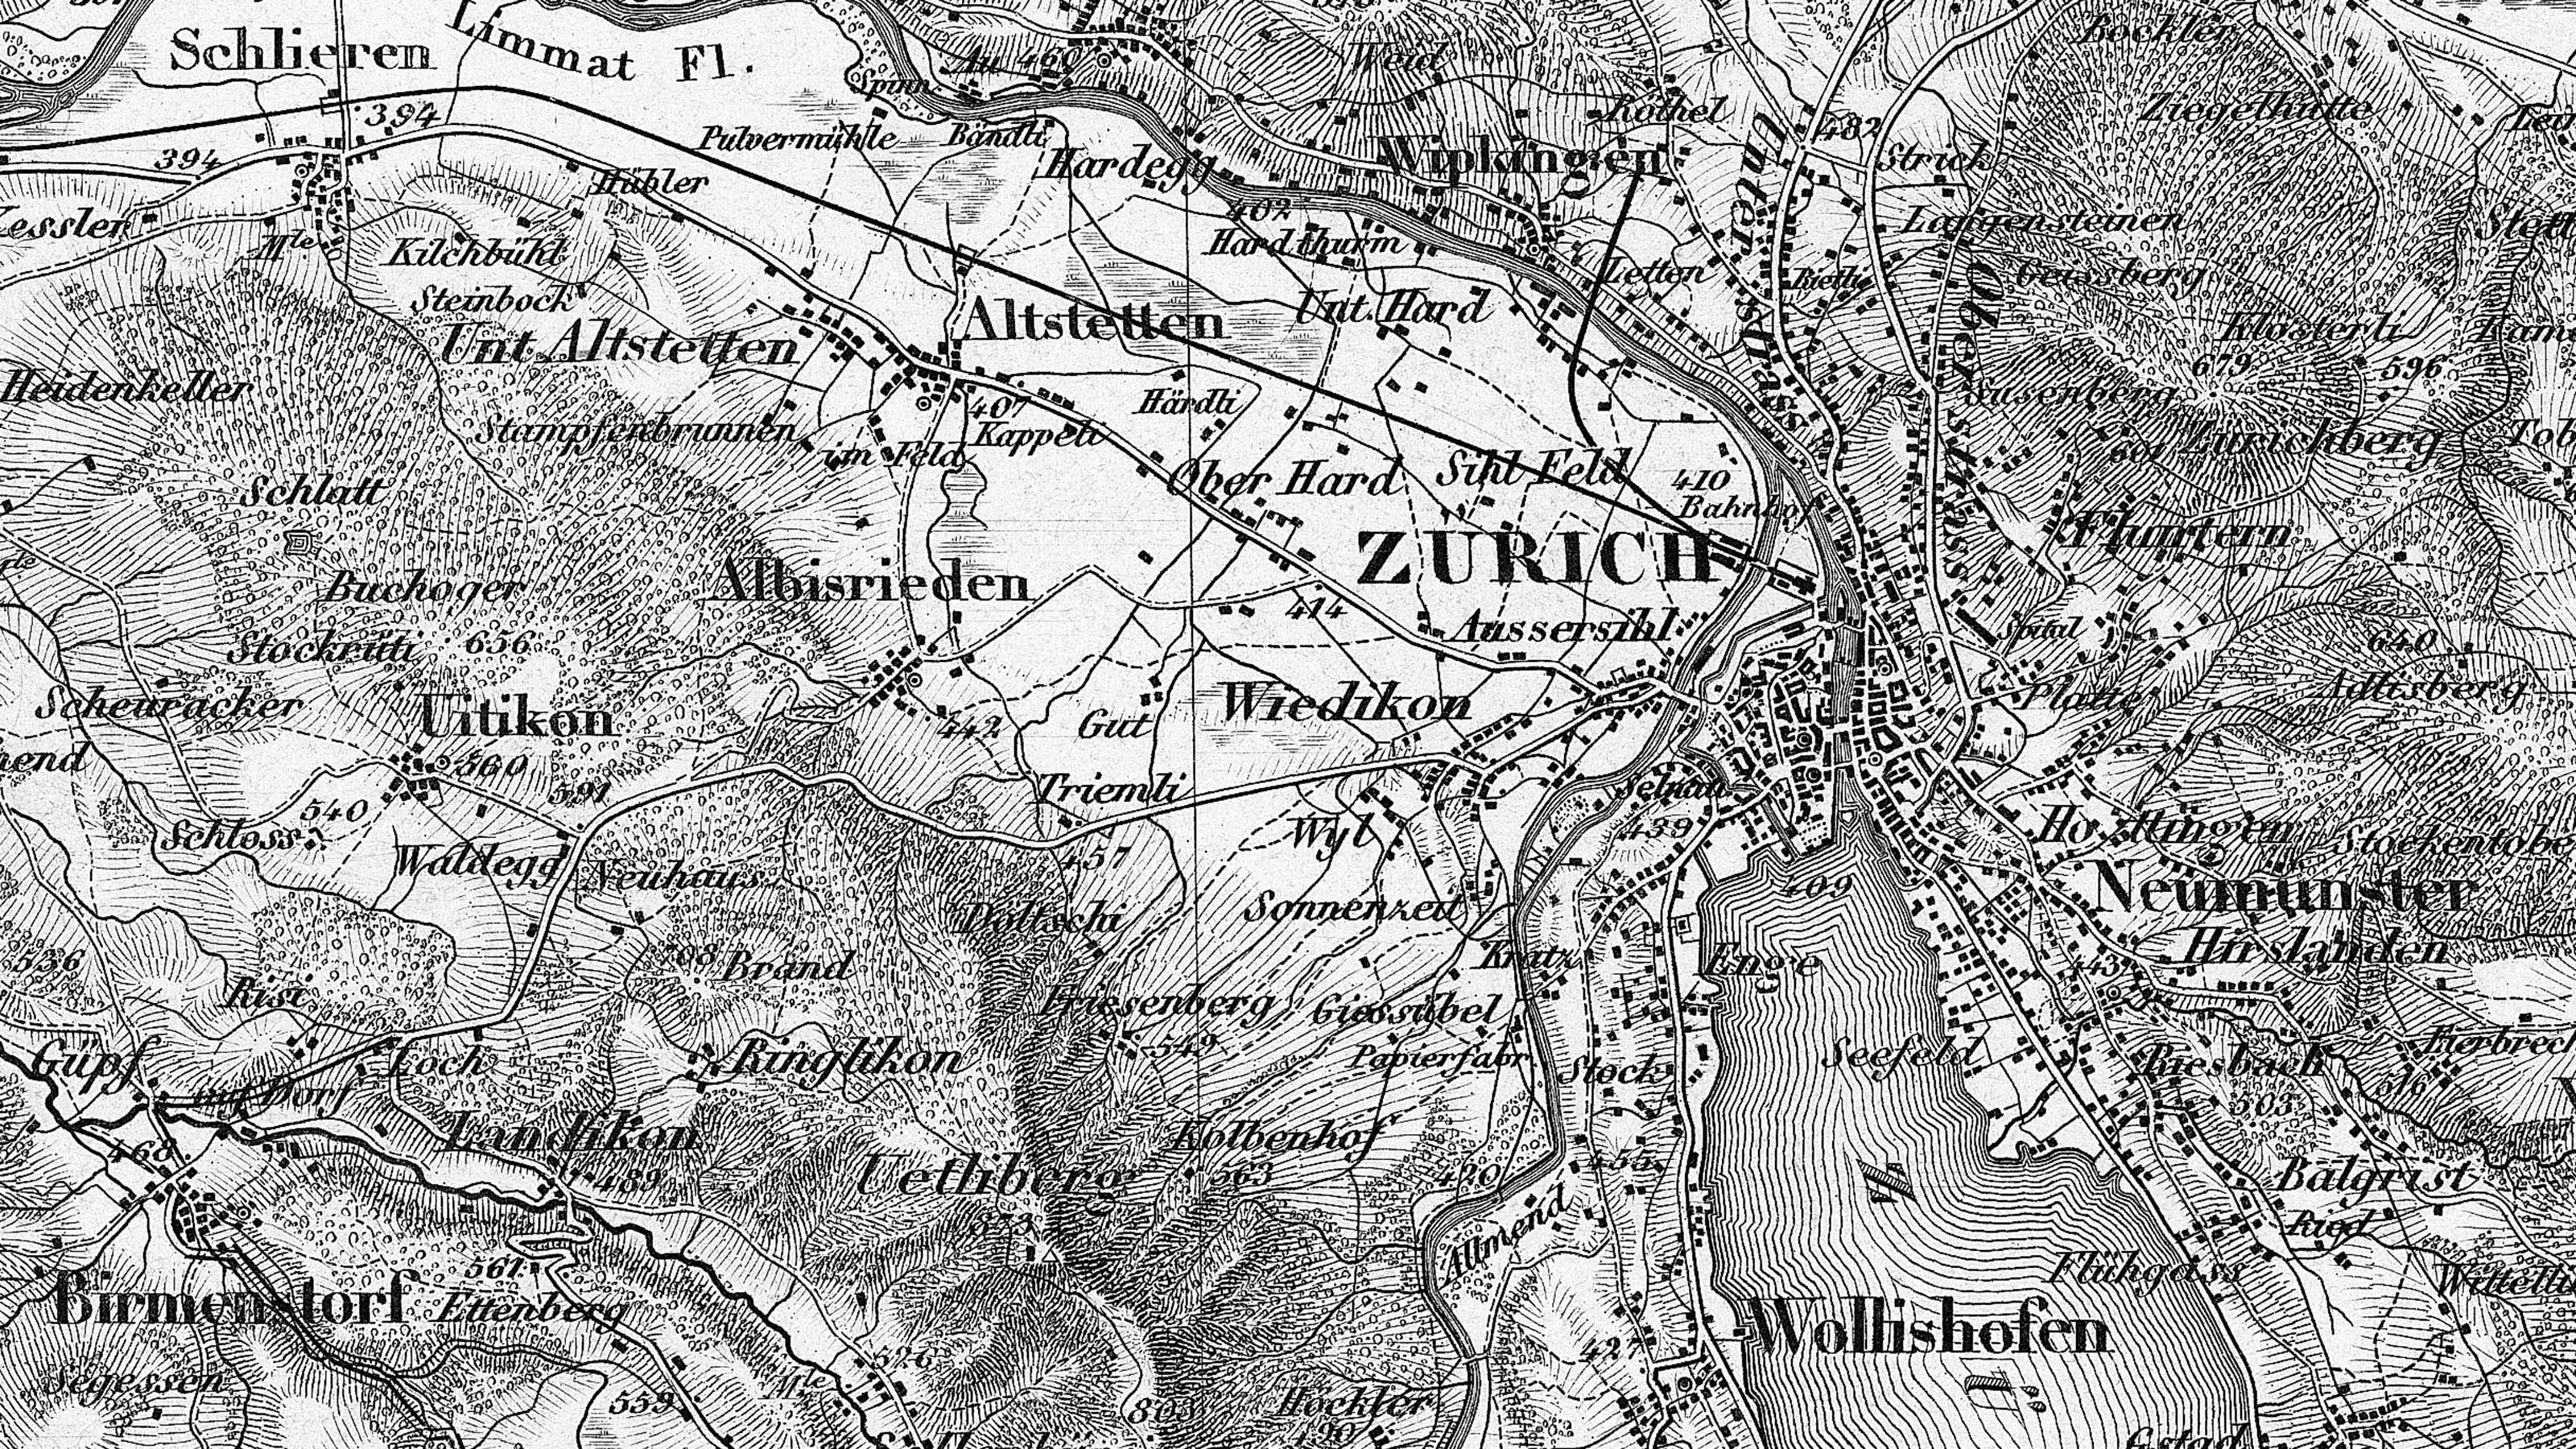 Una sezione della carta Dufour nella zona di Zurigo. La mappa è in bianco e nero e mostra il centro della città con il lago. Il dettaglio del foglio 8 della prima edizione della carta Dufour in scala 1:100.000 risale al 1861.